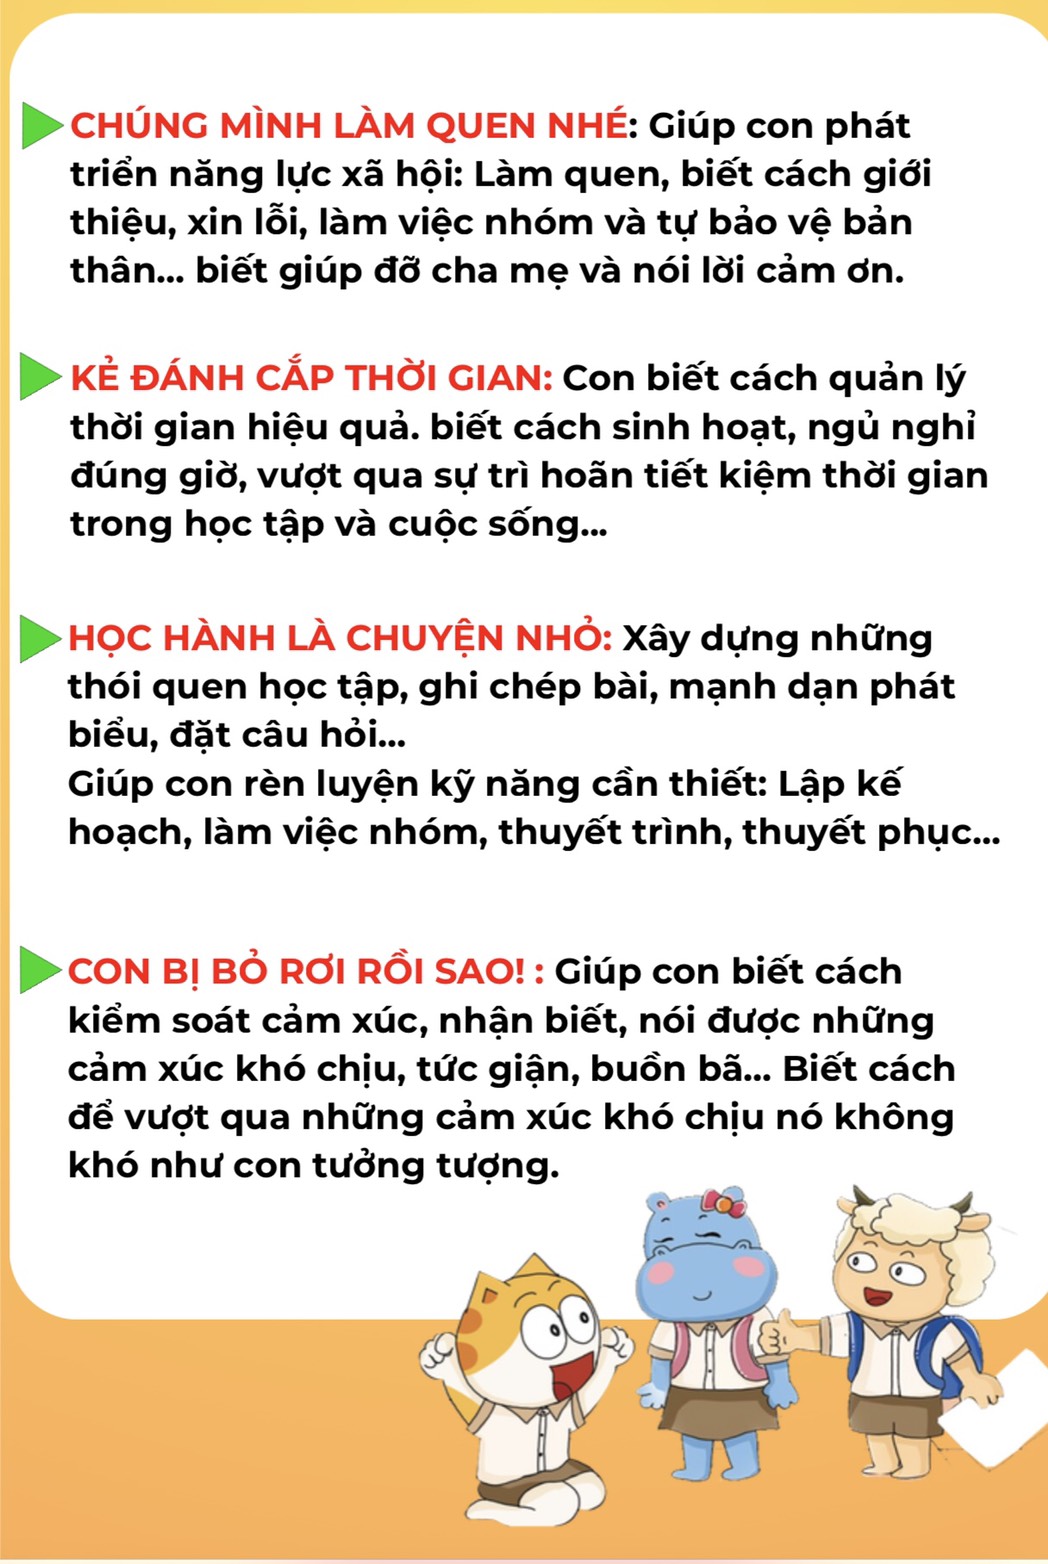 TRUYỆN TRANH MÈO CHÍP SIÊU QUẬY (Bộ truyện phát triển EQ đầu tiên tại Việt Nam)